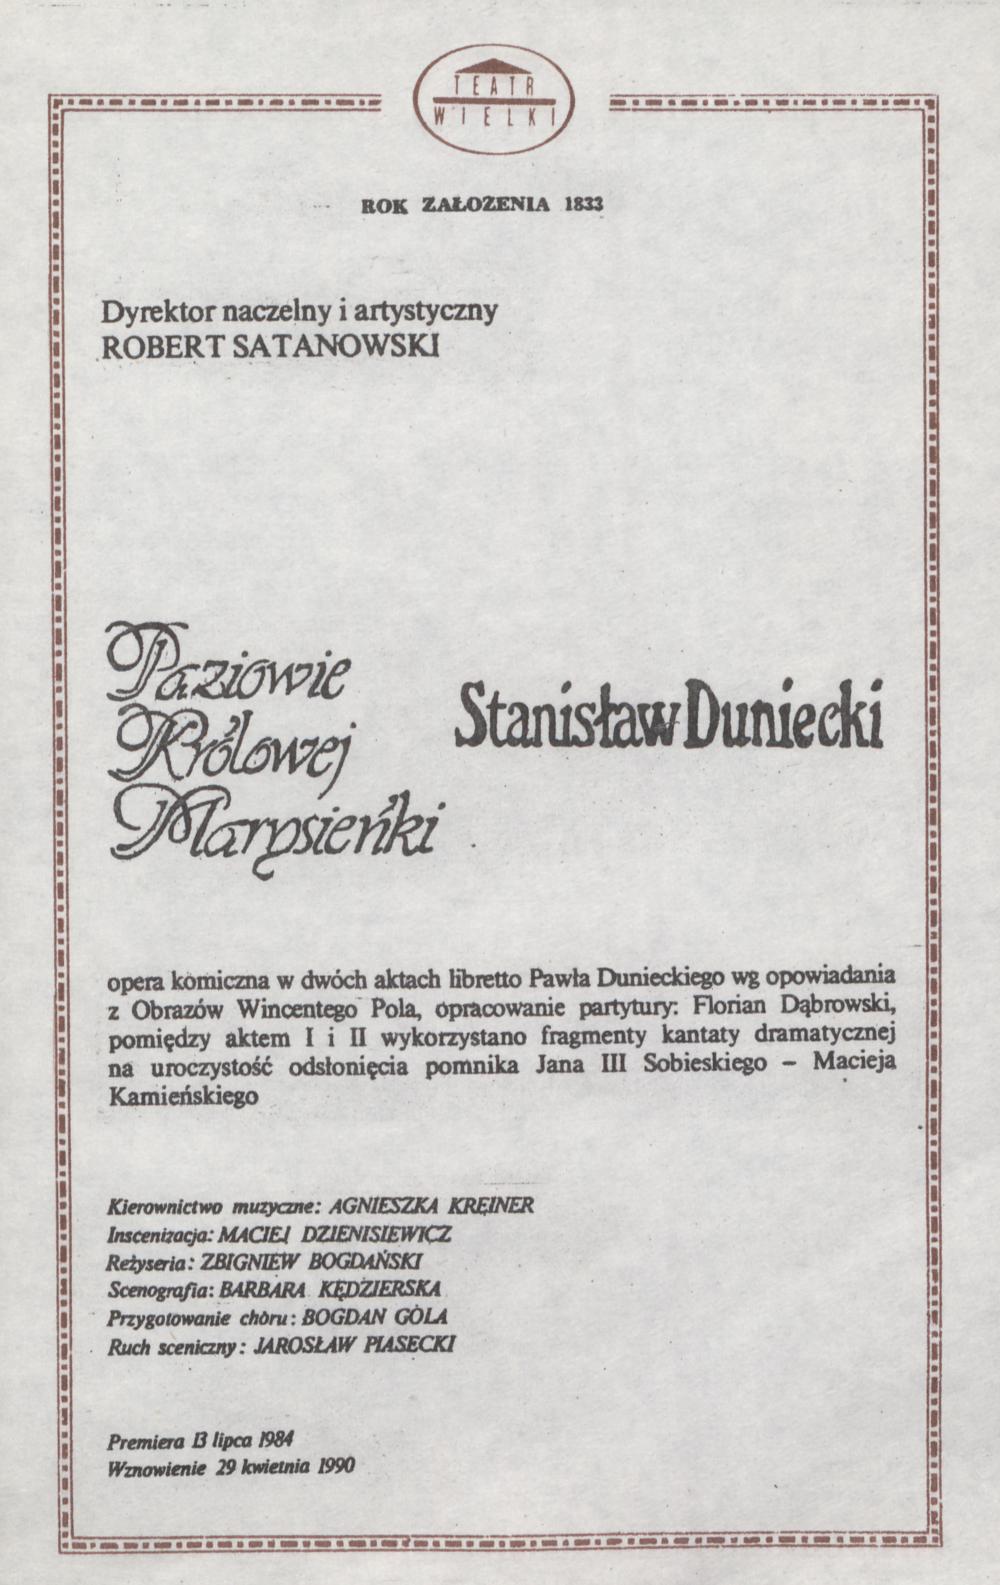 Wkładka Obsadowa „Paziowie Królowej Marysieńki” Stanisław Duniecki 23-09-1990